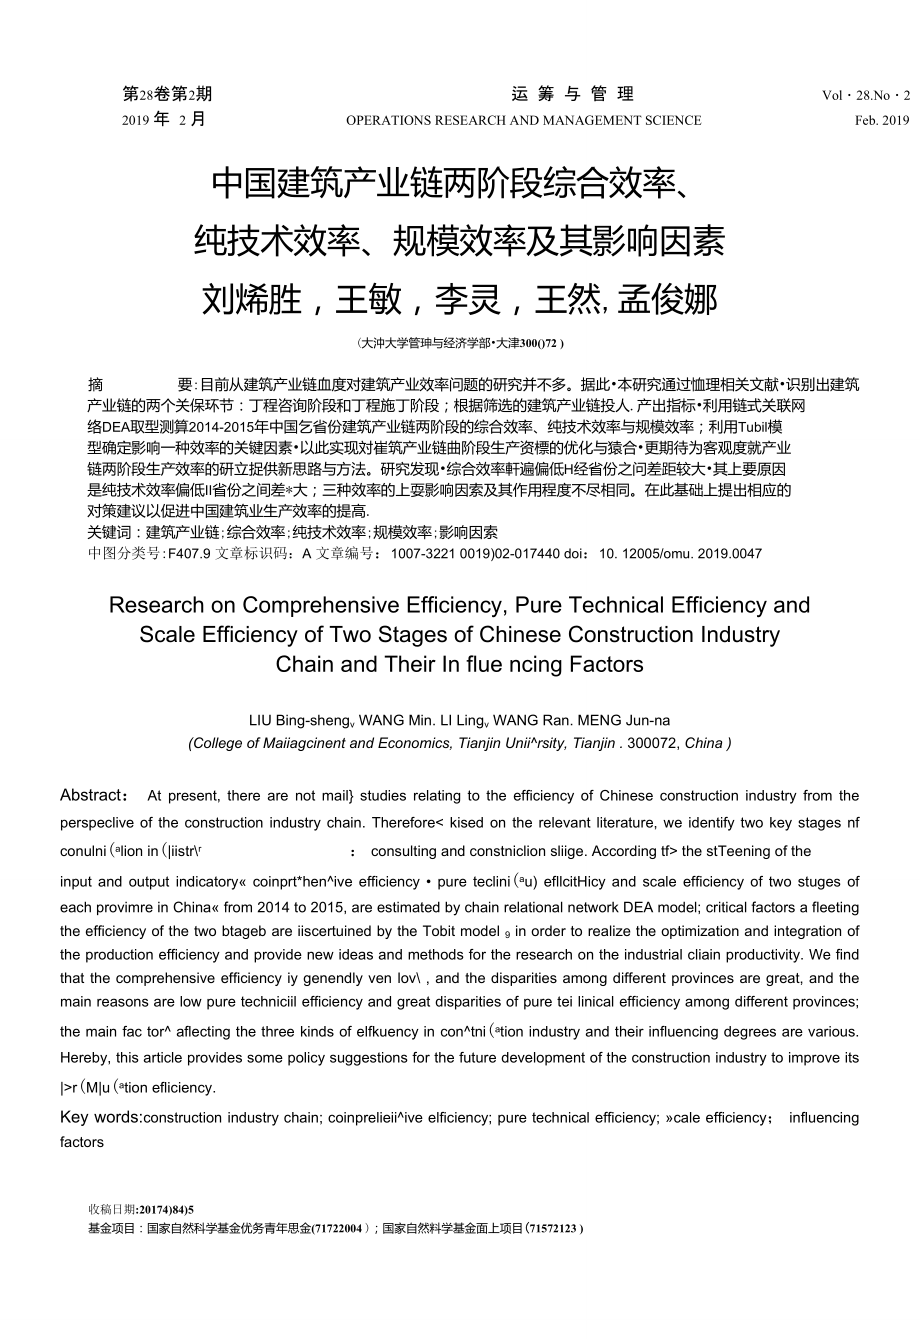 中国建筑产业链两阶段综合效率、纯技术效率、规模效率及其影响因素_第1页